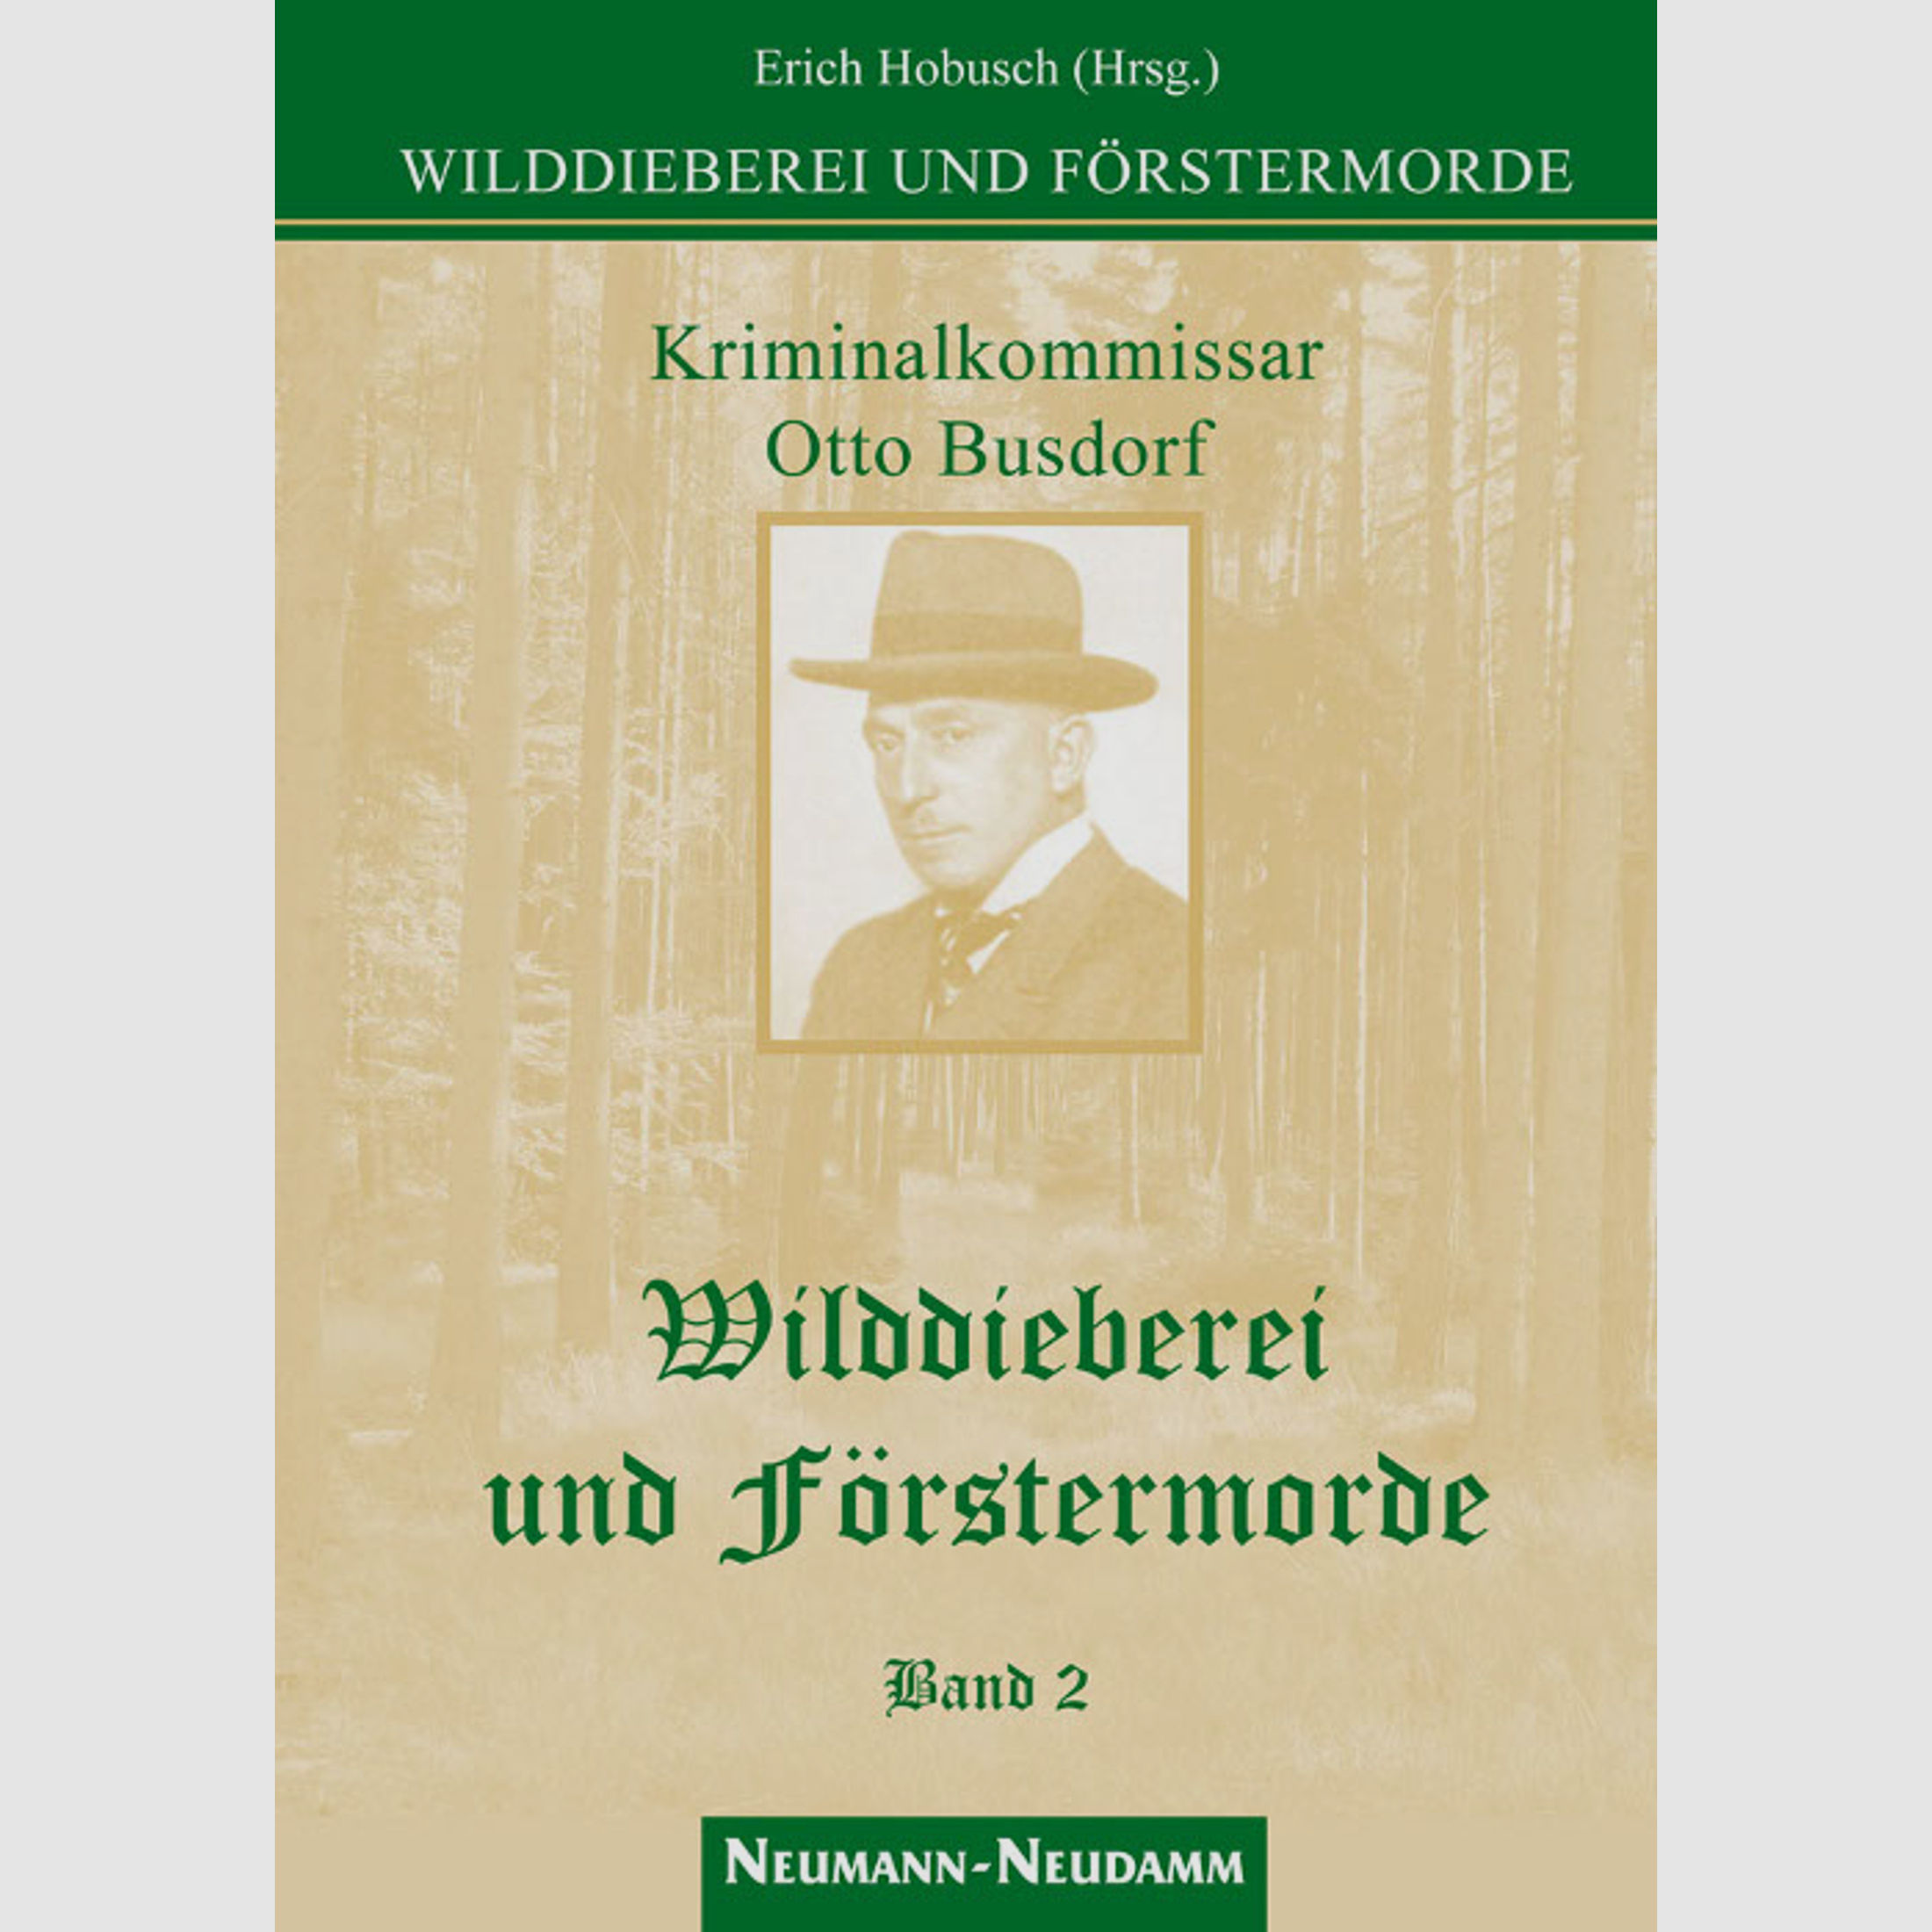 Hobusch (Hrsg.), Wilddieberei und Förstermorde Band 2